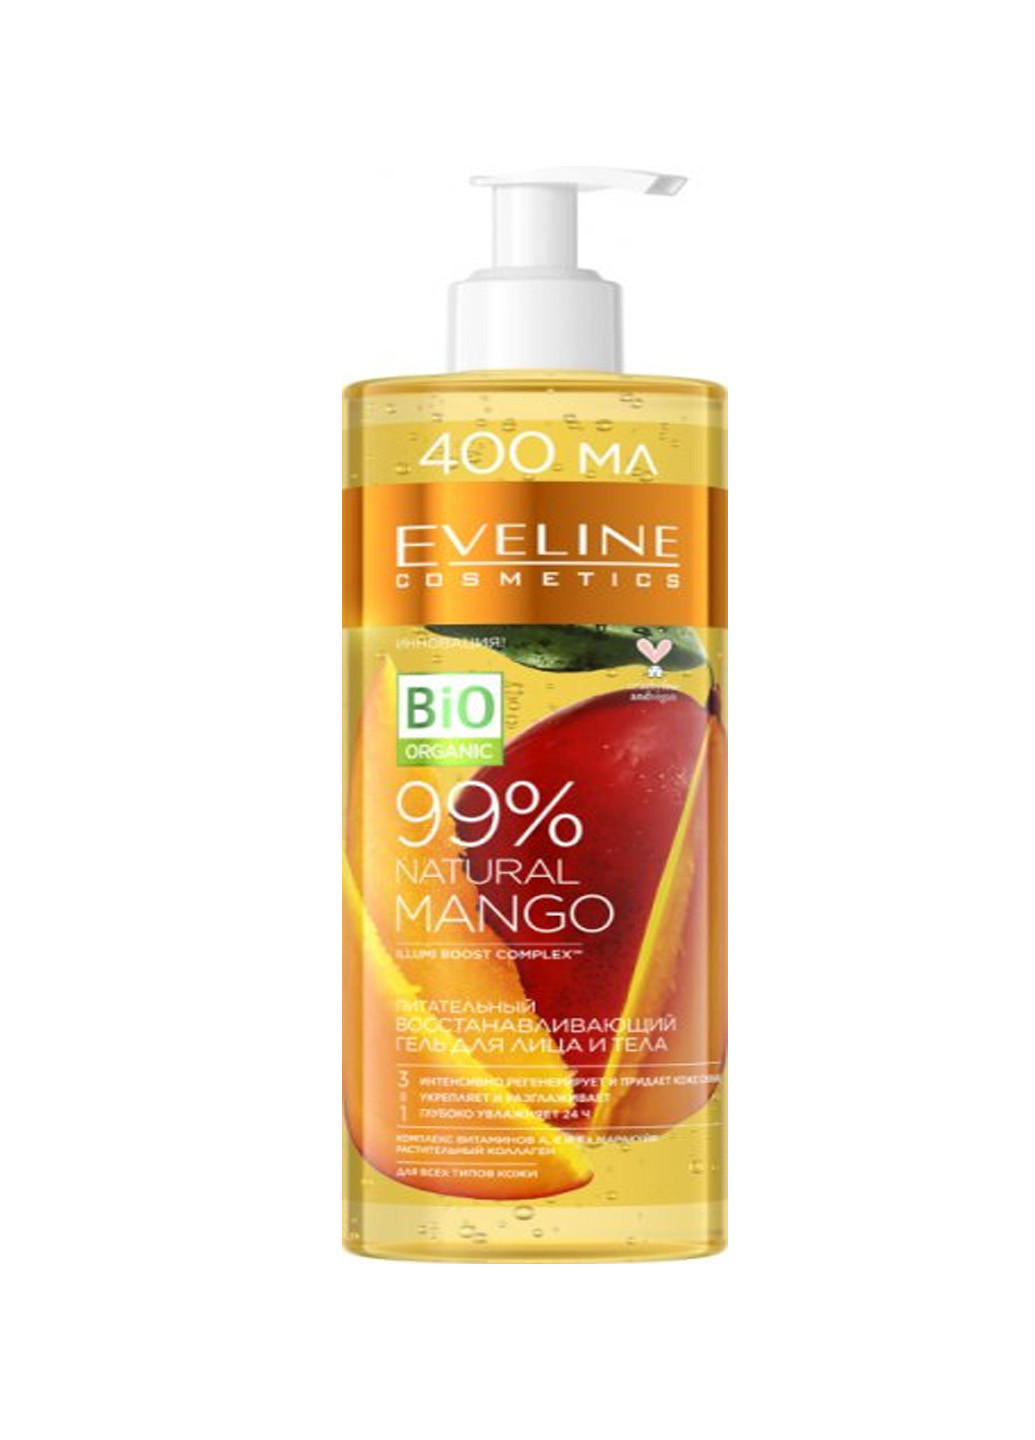 Питательно-восстанавливающий гель для лица и тела 99% Natural Mango 400 мл Eveline Cosmetics 5903416020226 (257075228)